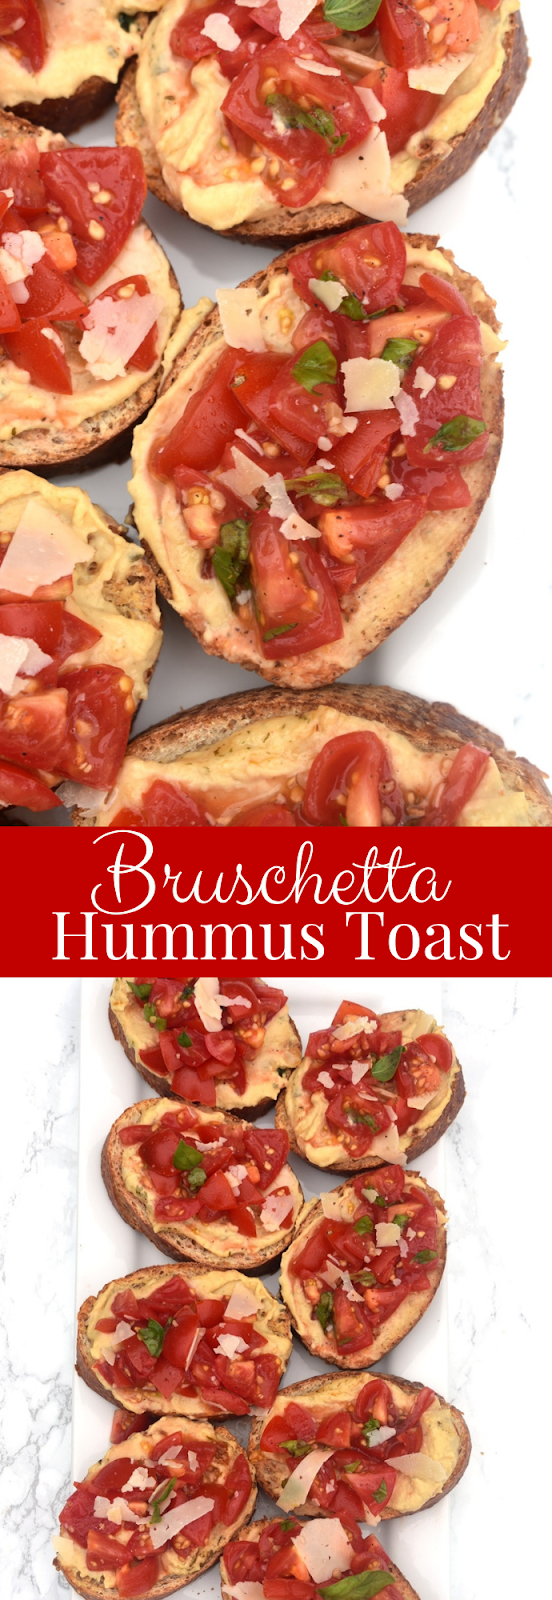 Bruschetta hummus toast recipe